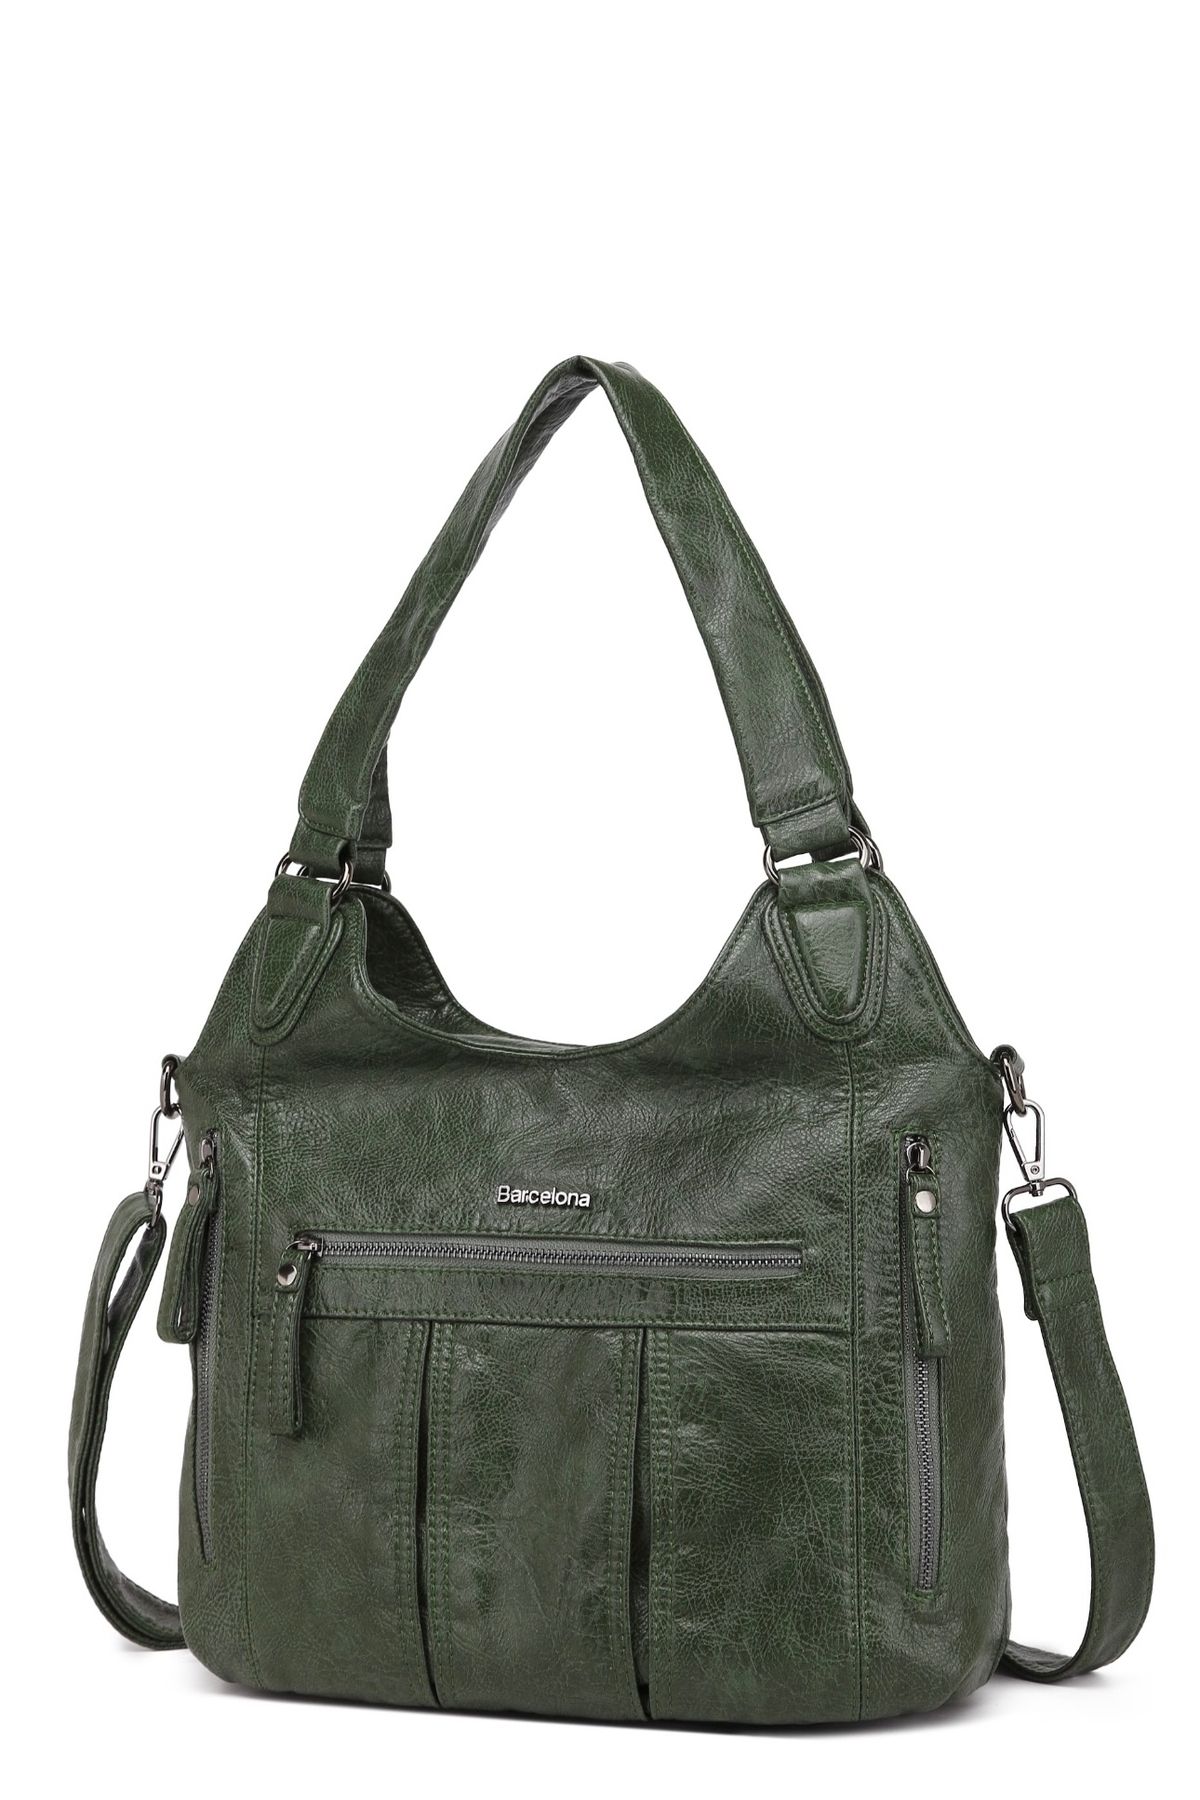 21K Smart Bags Smart bag ithal yumuşak deri omuz ve çapraz  çanta modeli brn1837